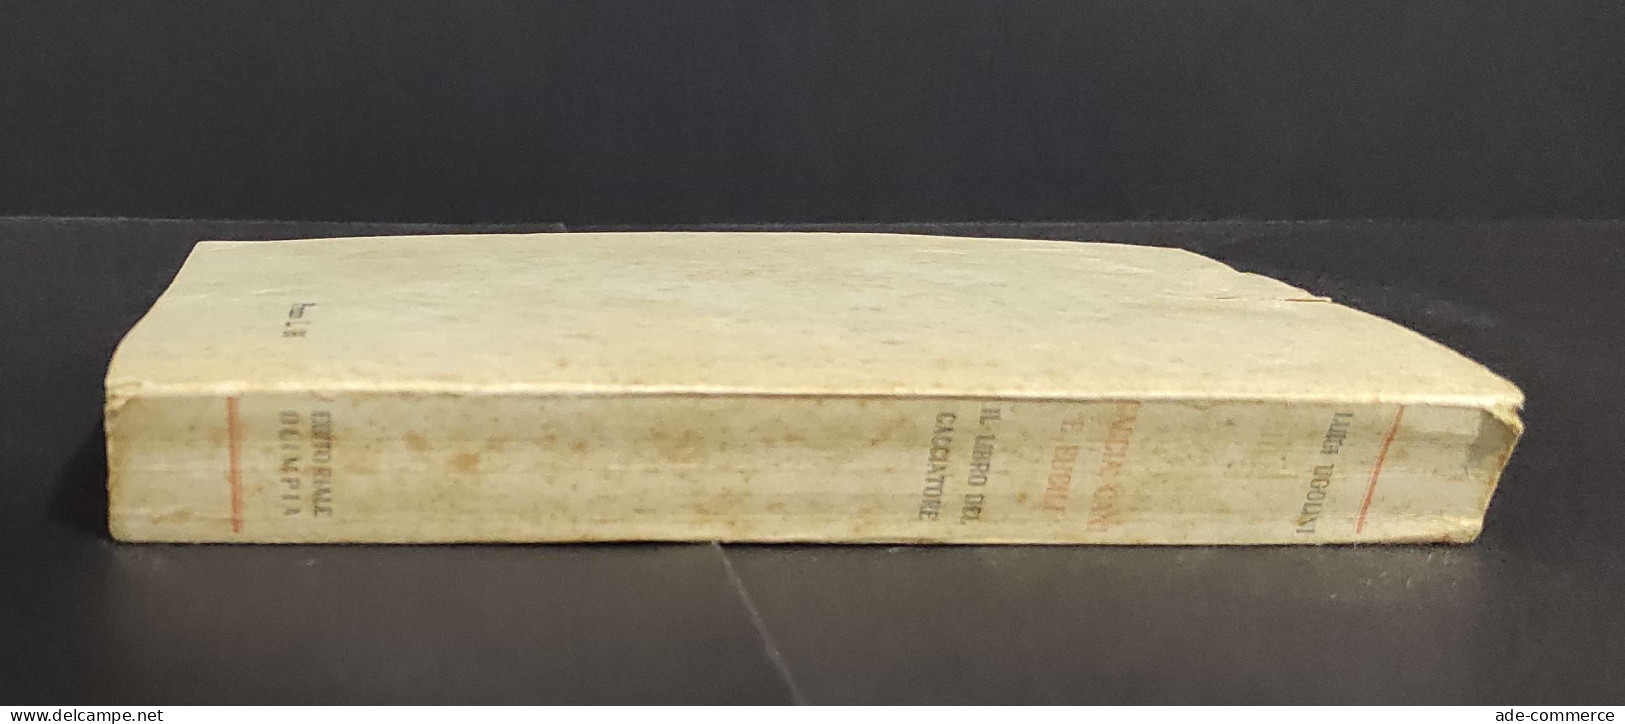 Caccia - Cani E Fucili - Il Libro Del Cacciatore - L. Ugolini - Ed. Olimpia - 1941                                       - Fischen Und Jagen